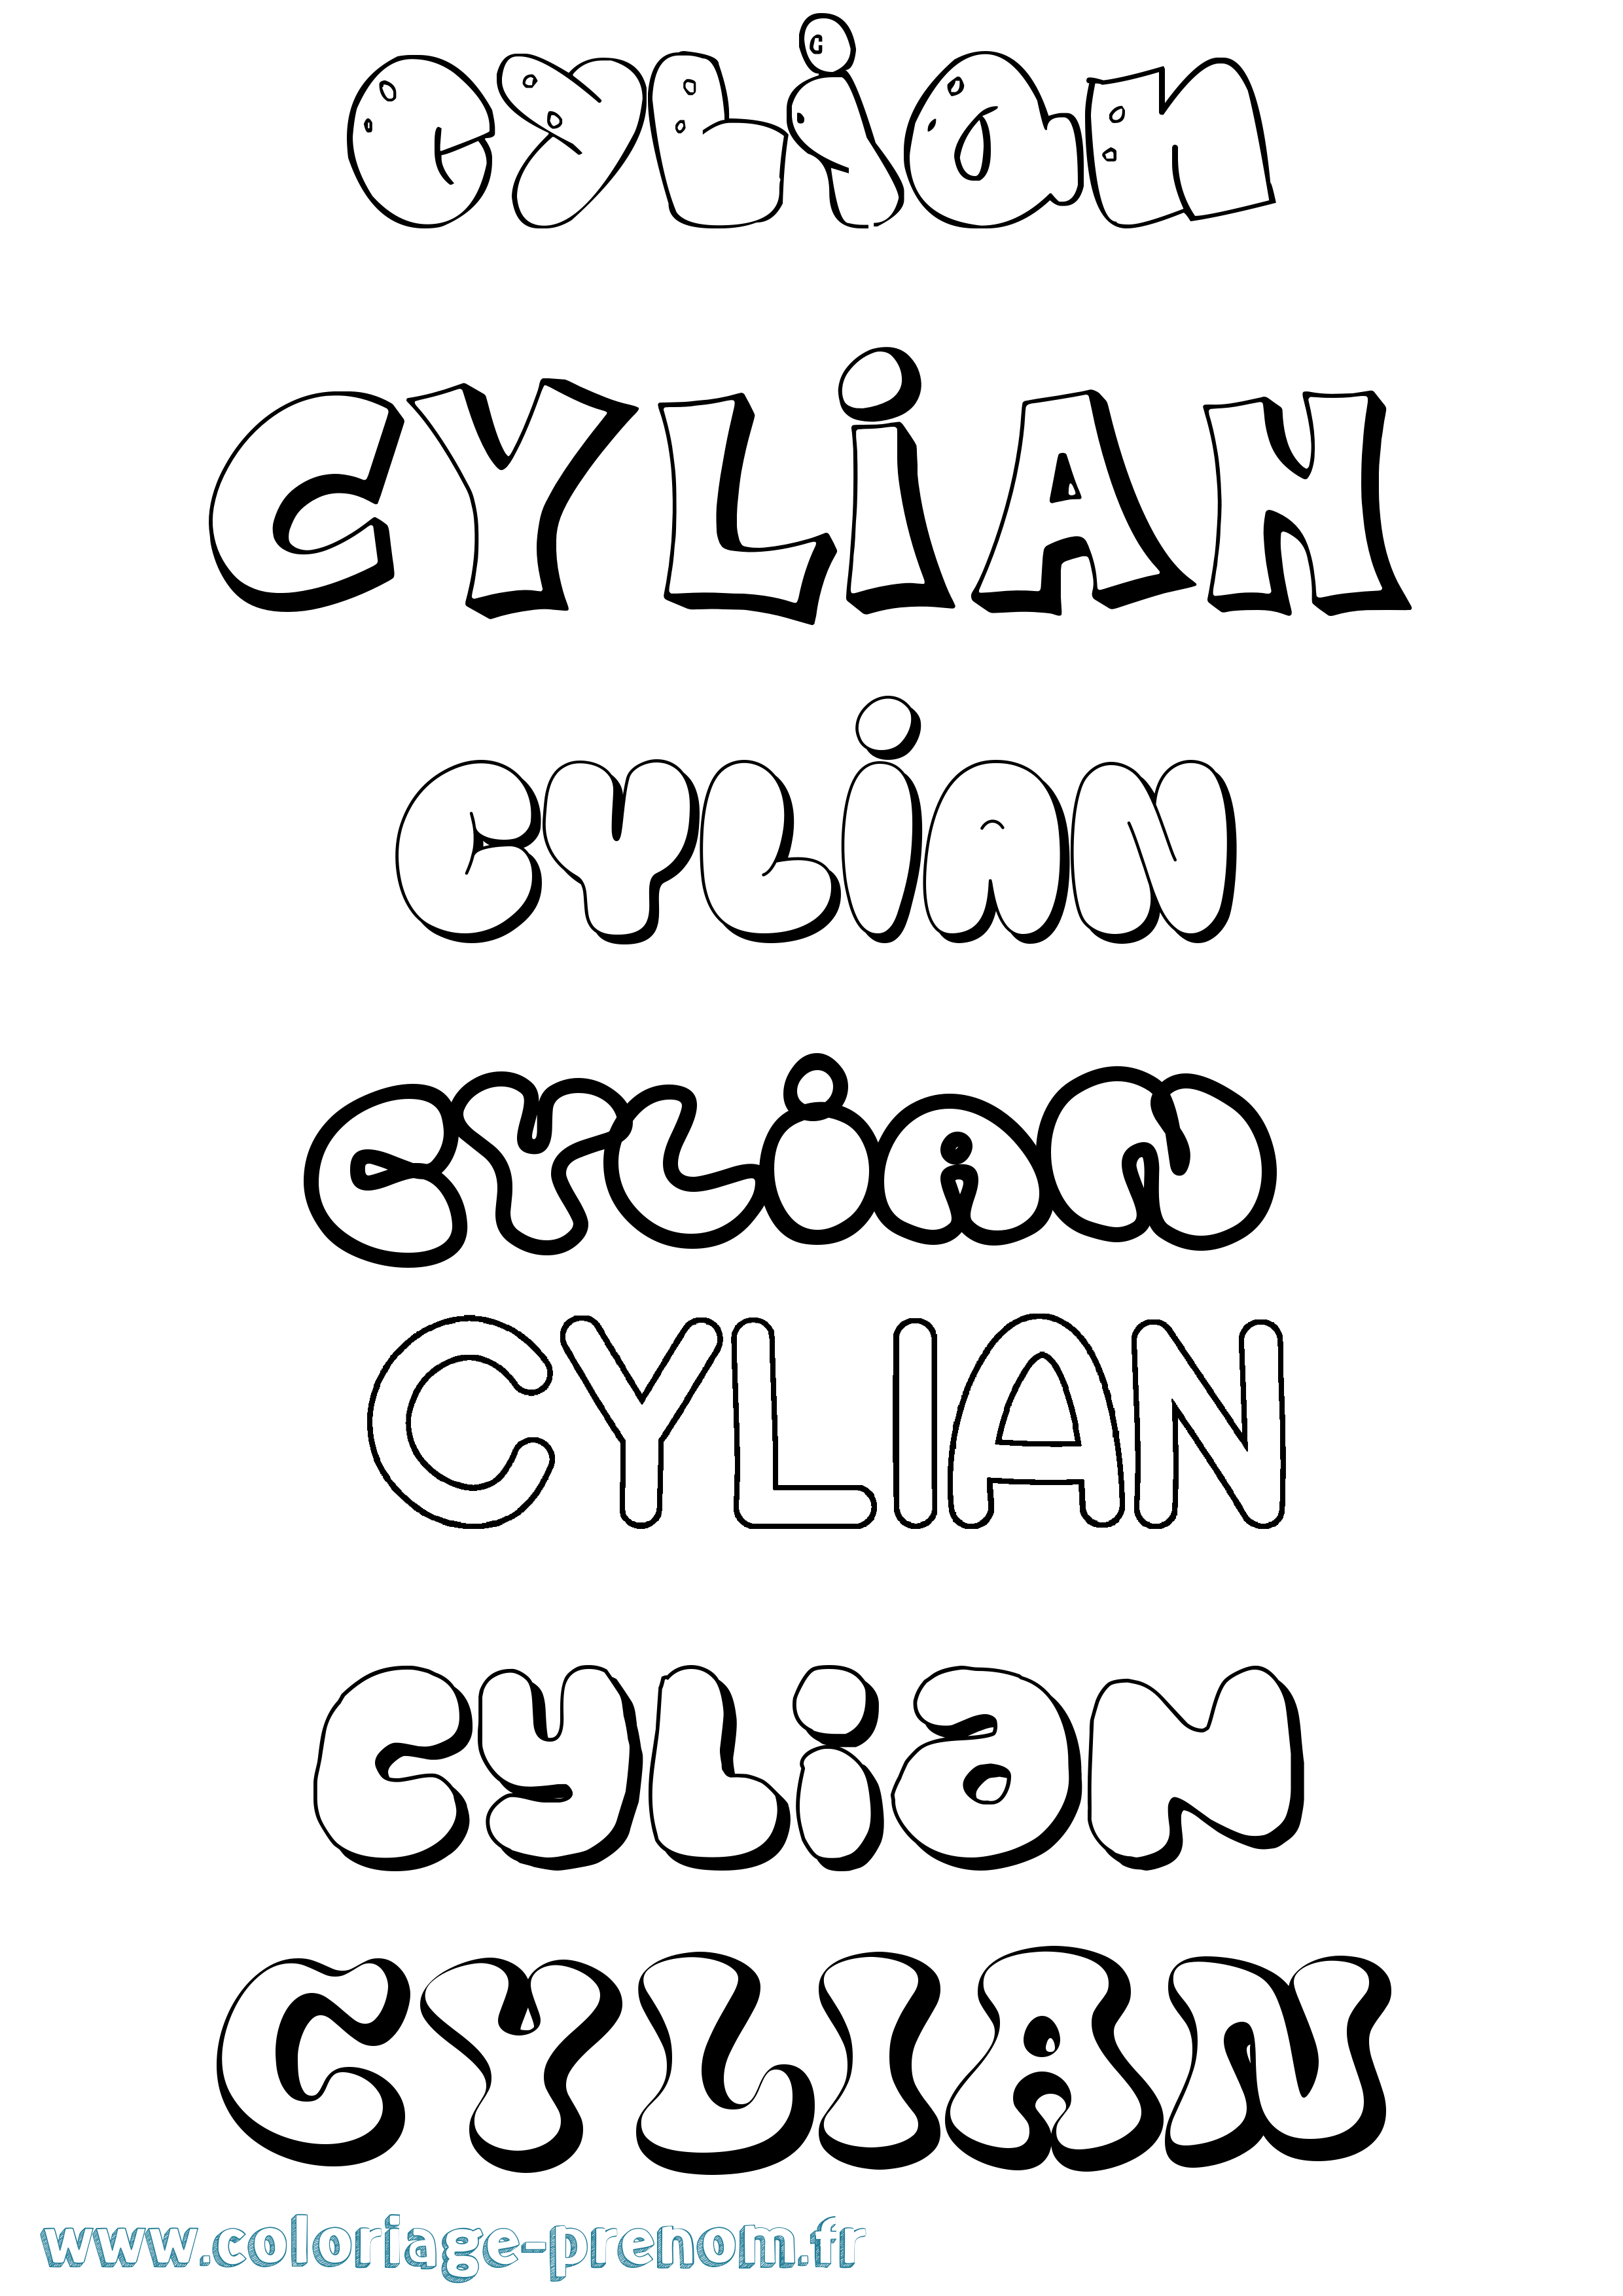 Coloriage prénom Cylian Bubble